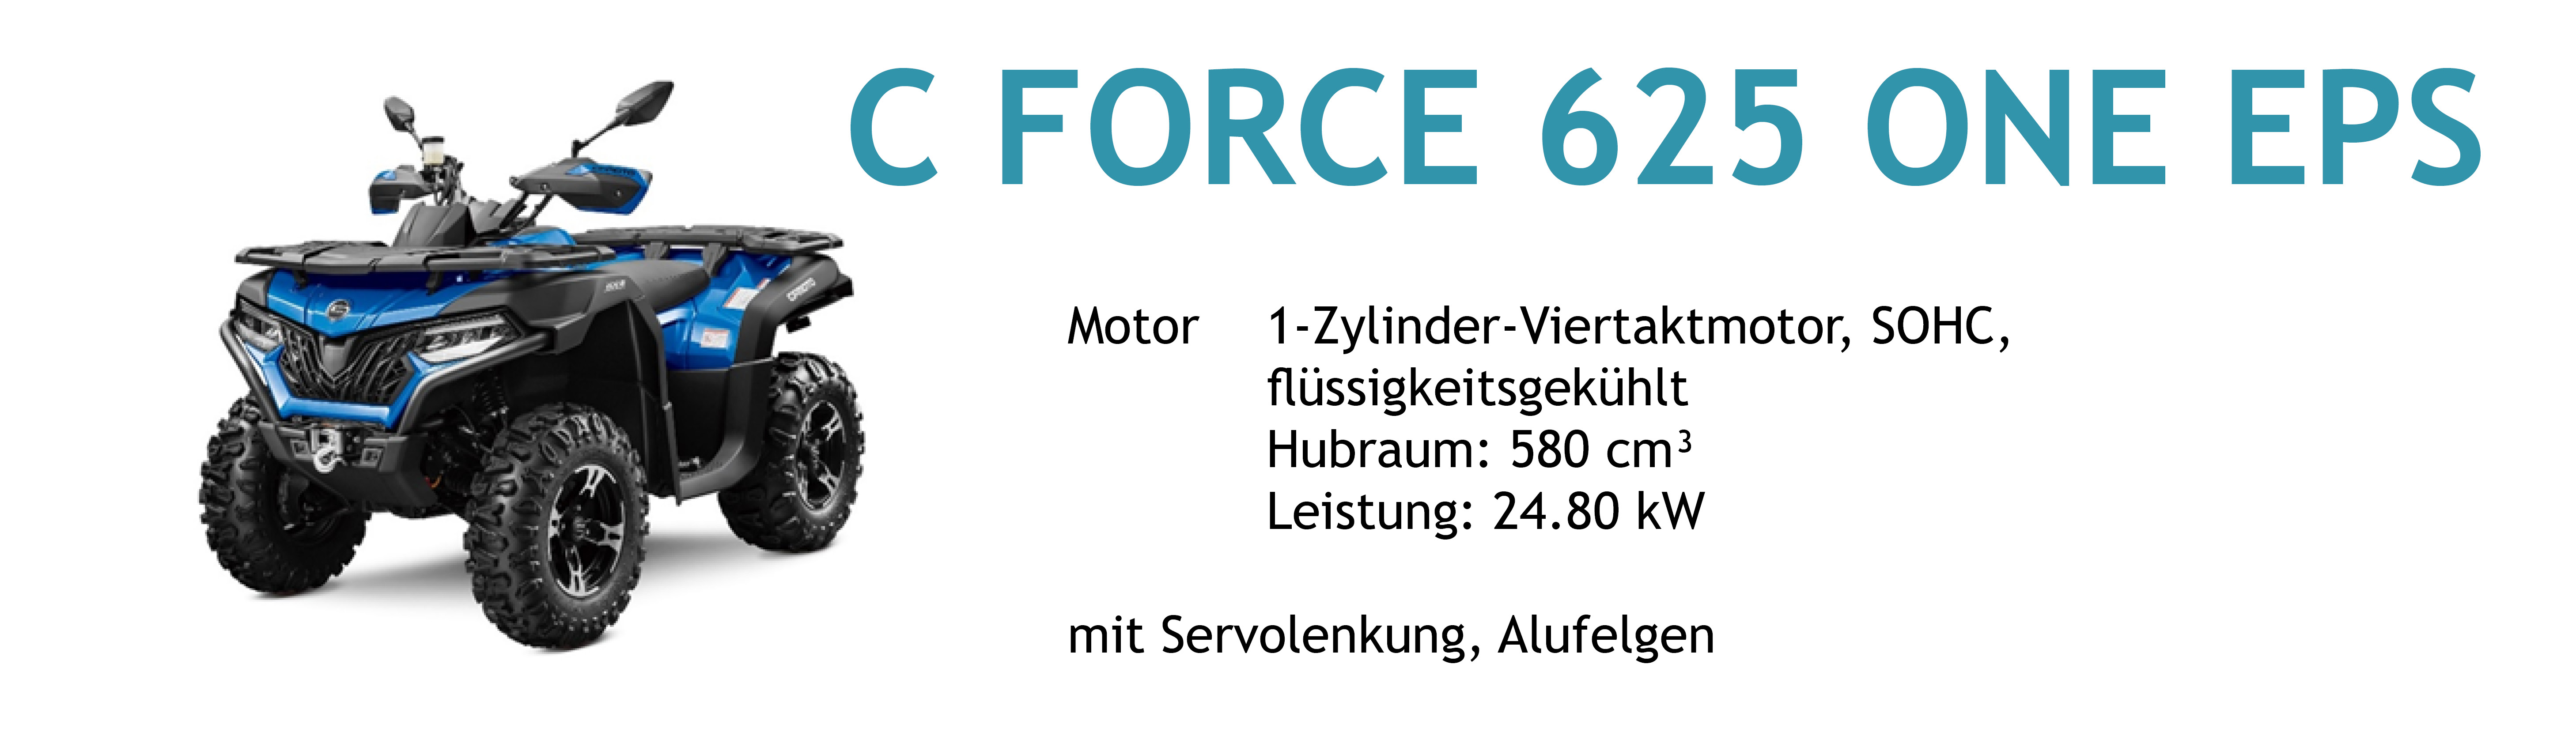 Cforce625 ONE EPS